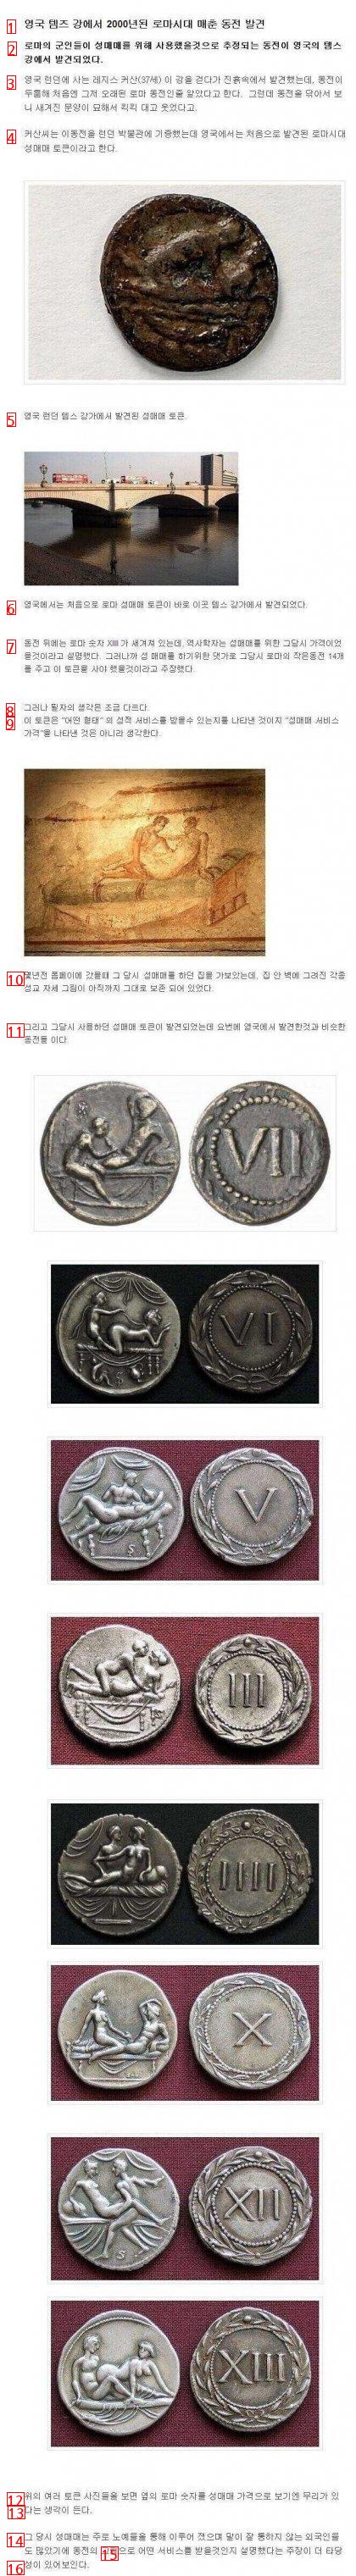 ㅇㅎ?) 고대 로마 시대의 성매매 쿠폰 ㄷㄷㄷ.jpg